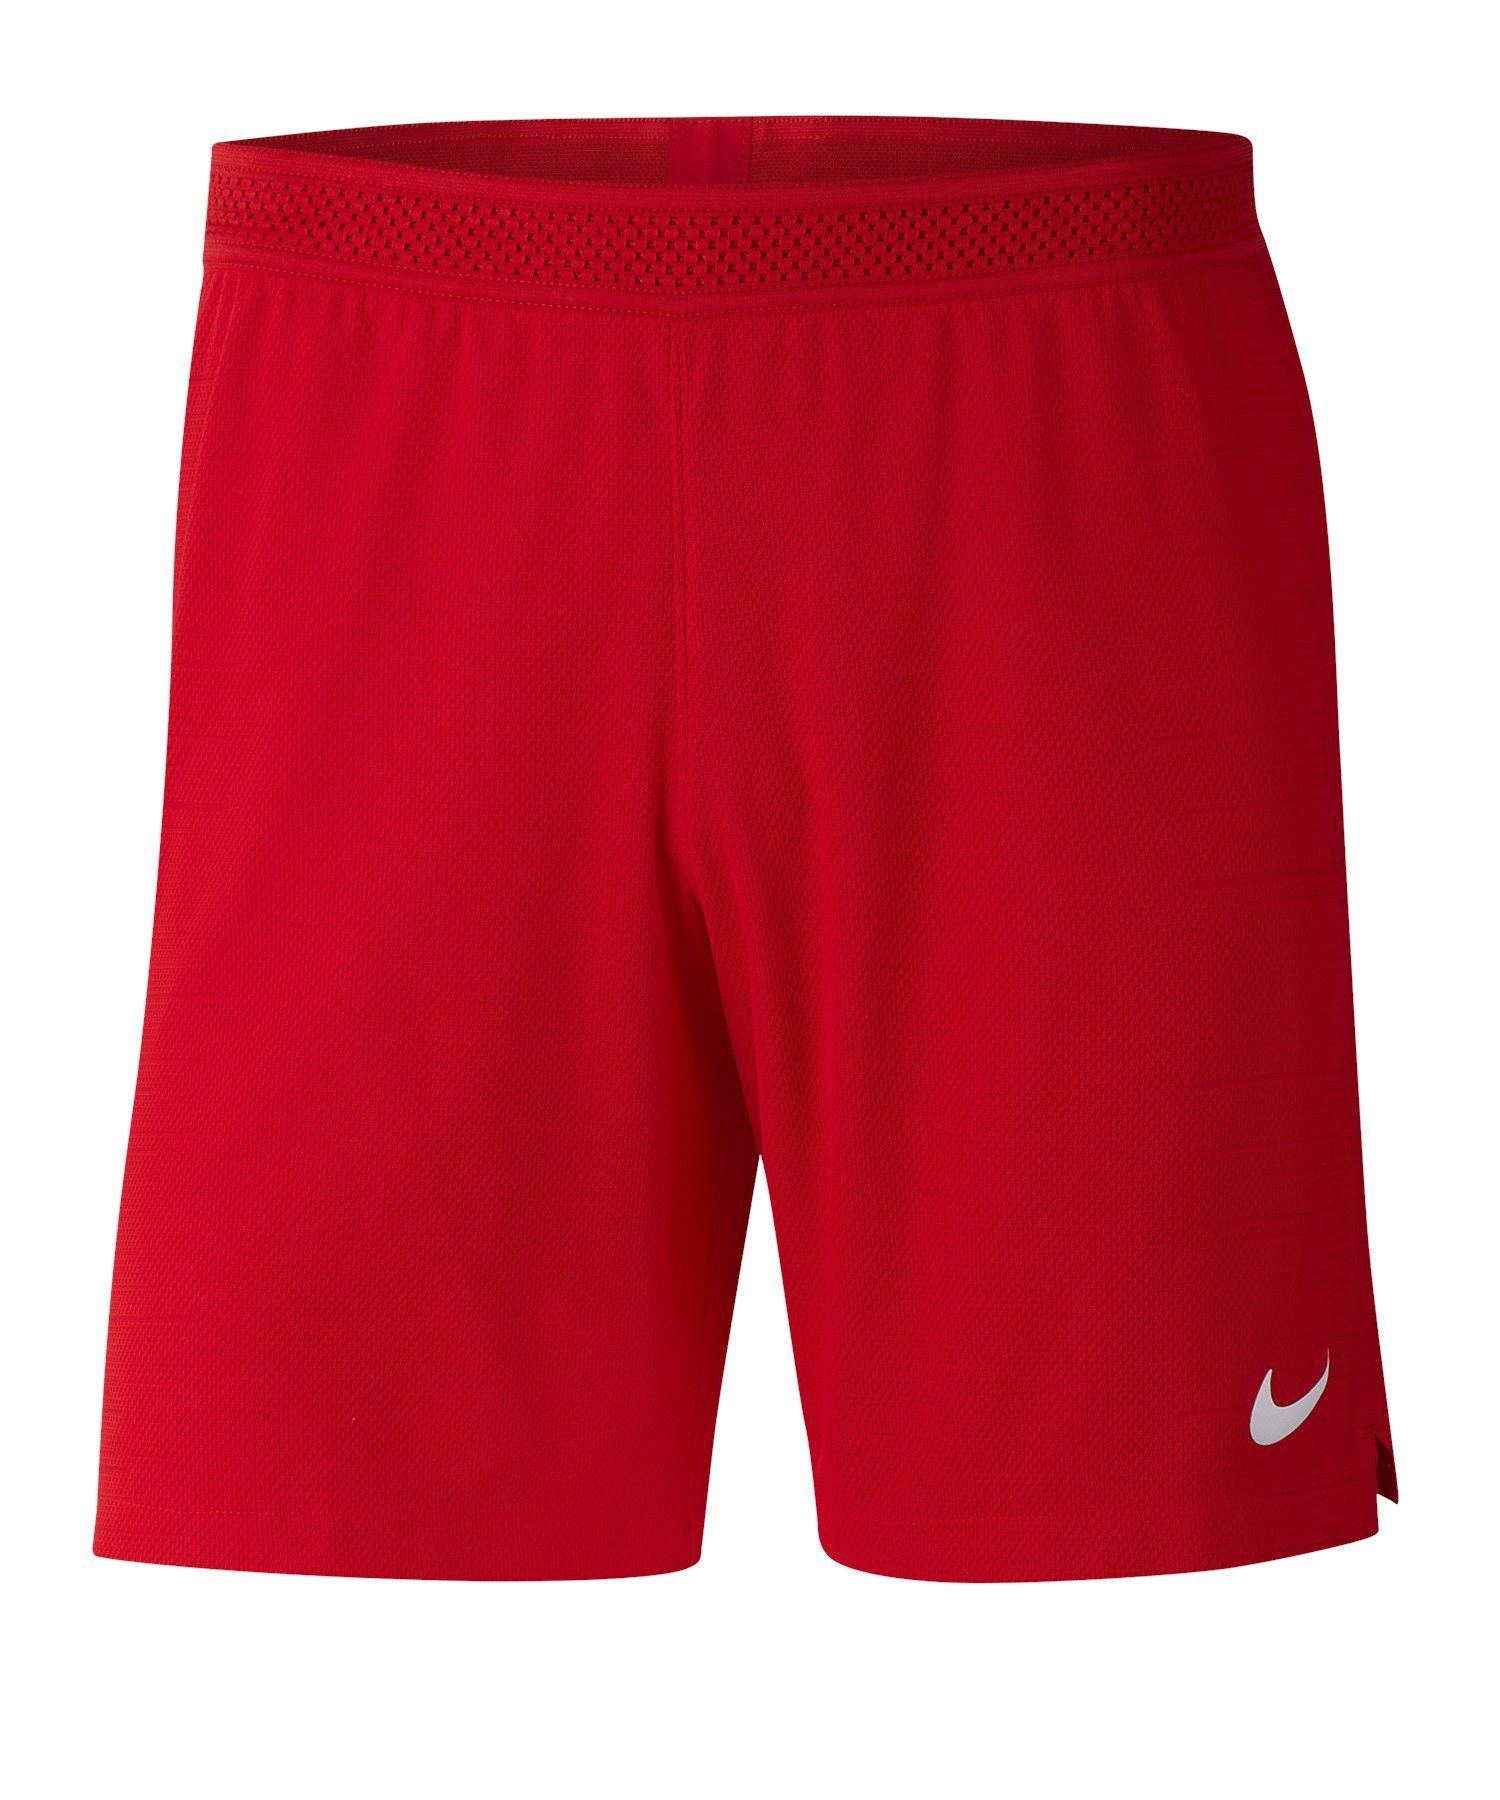 Short rot Sporthose Nike II Vaporknit